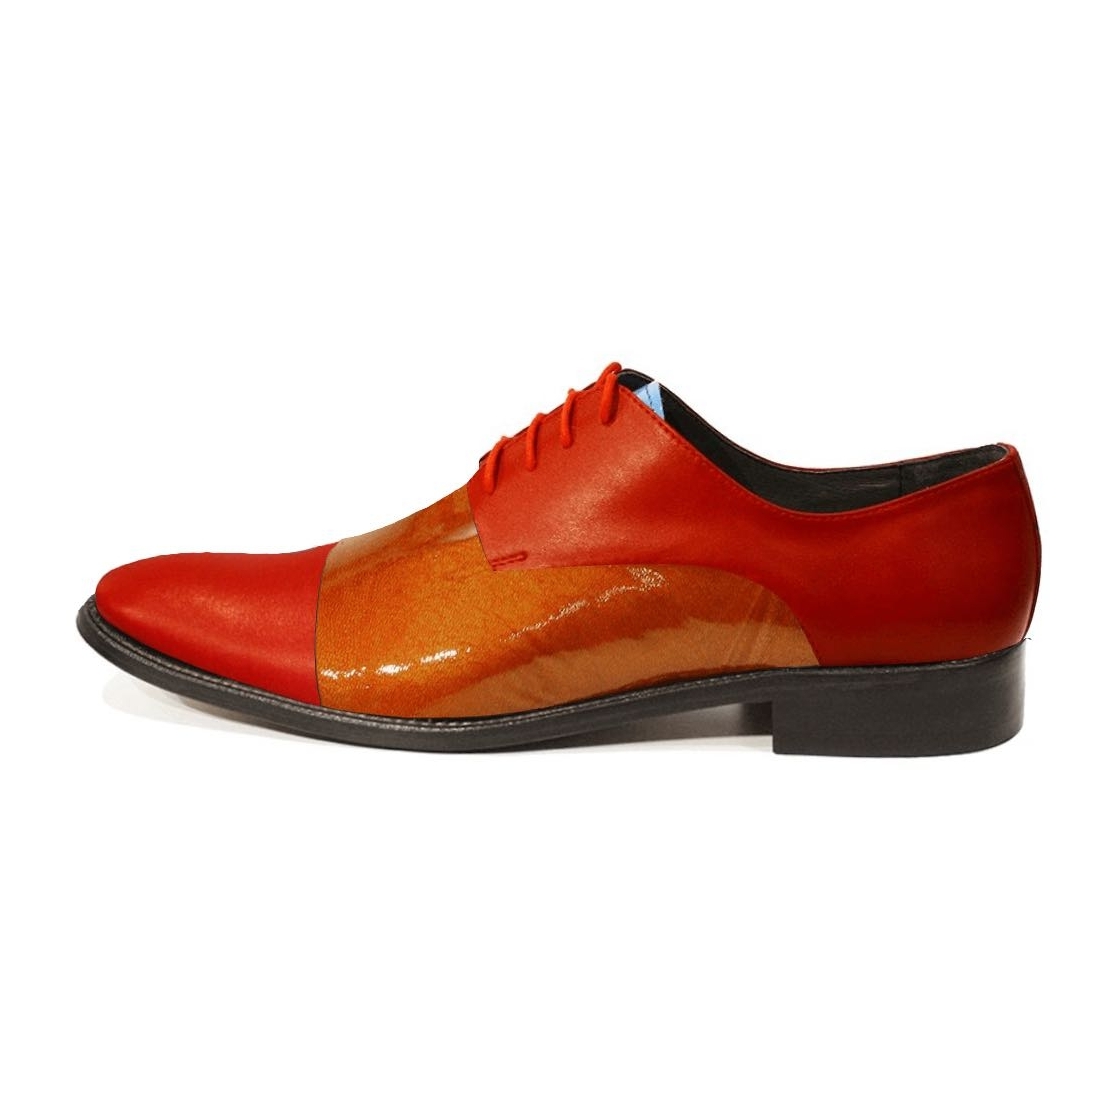 Modello Teterro - Scarpe Classiche - Handmade Colorful Italian Leather Shoes